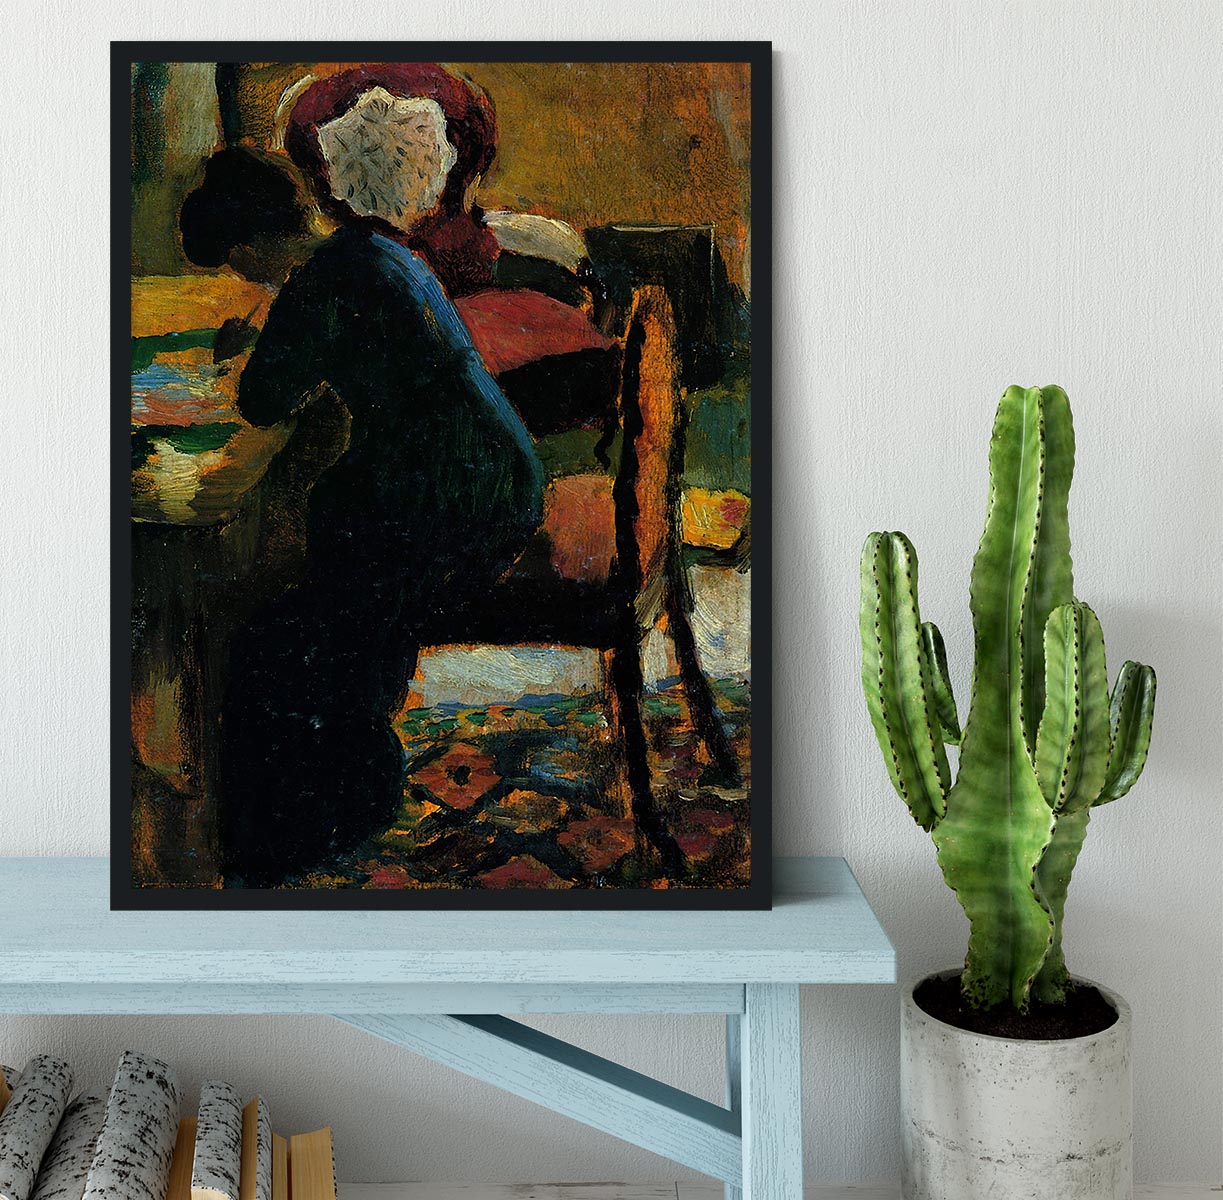 Elisabeth at the desk by Macke Framed Print - Canvas Art Rocks - 2